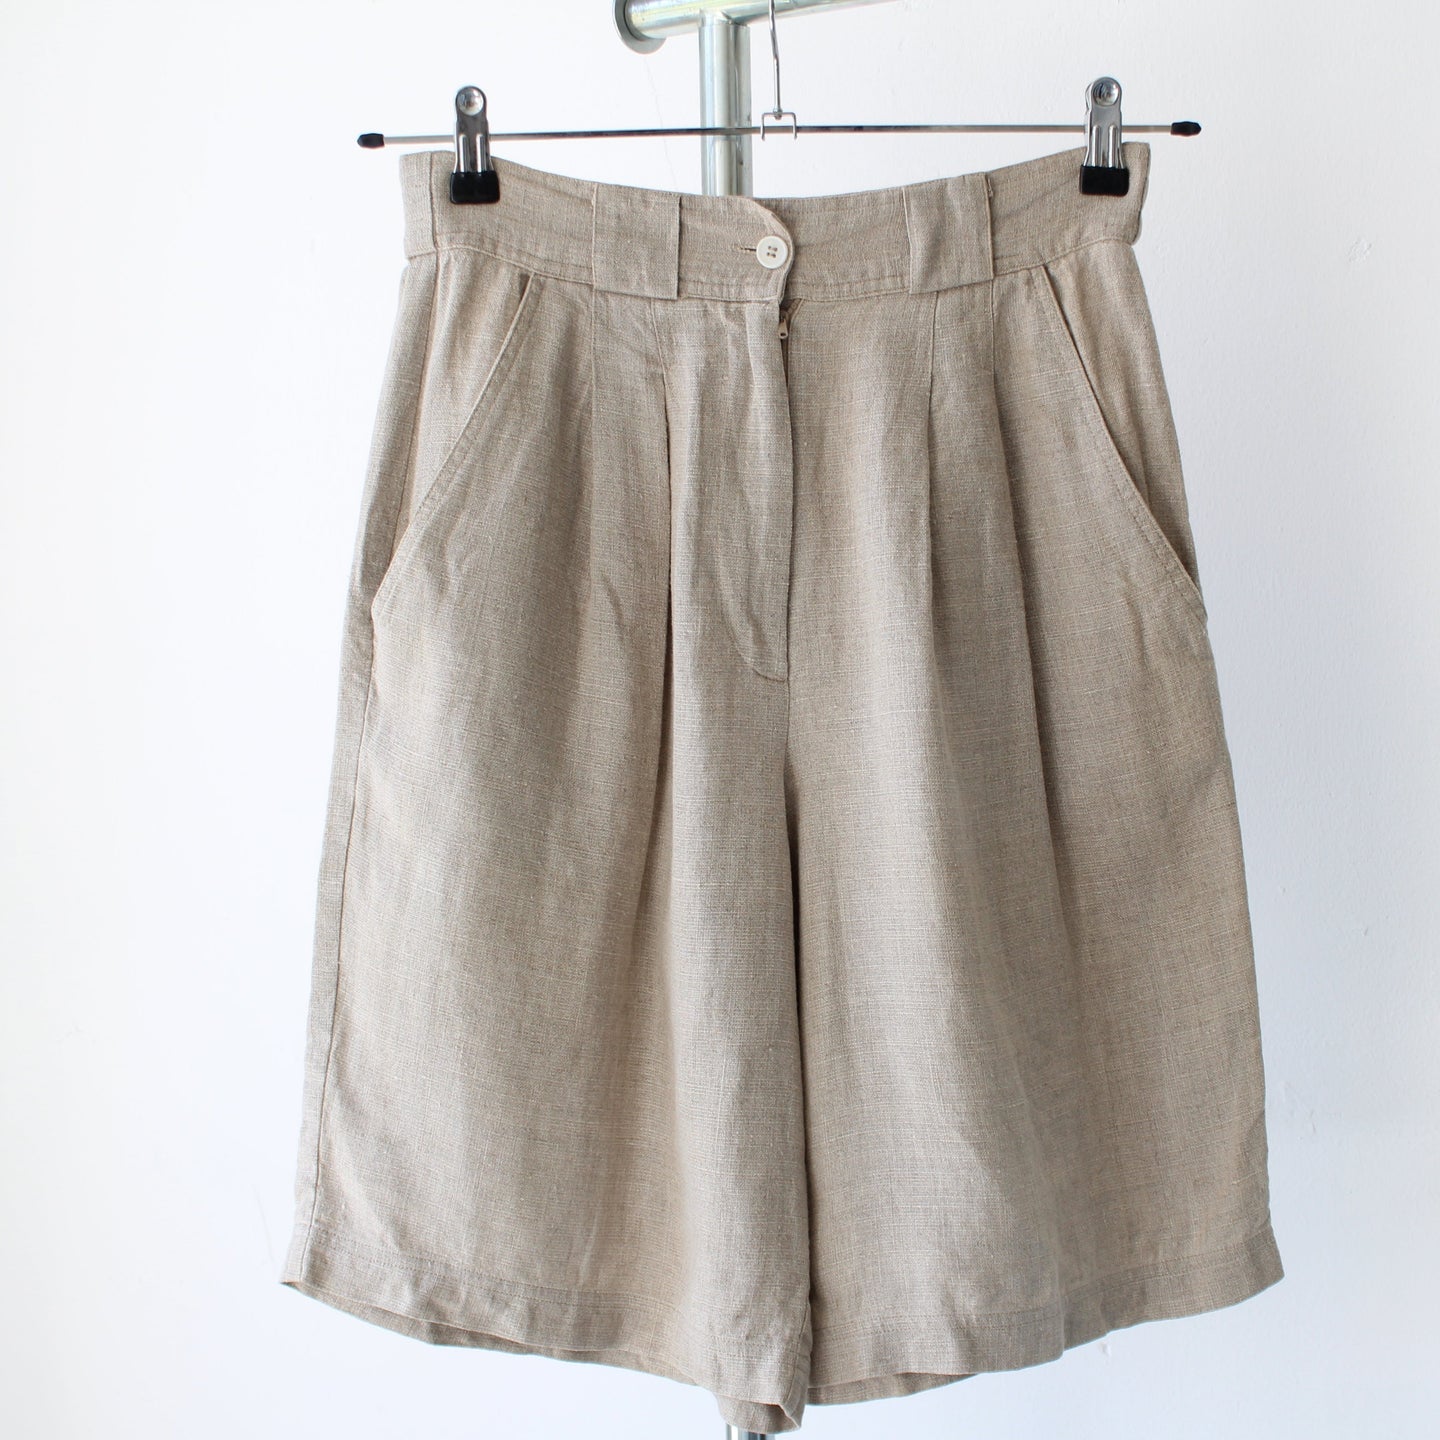 Vintage linen shorts, size S